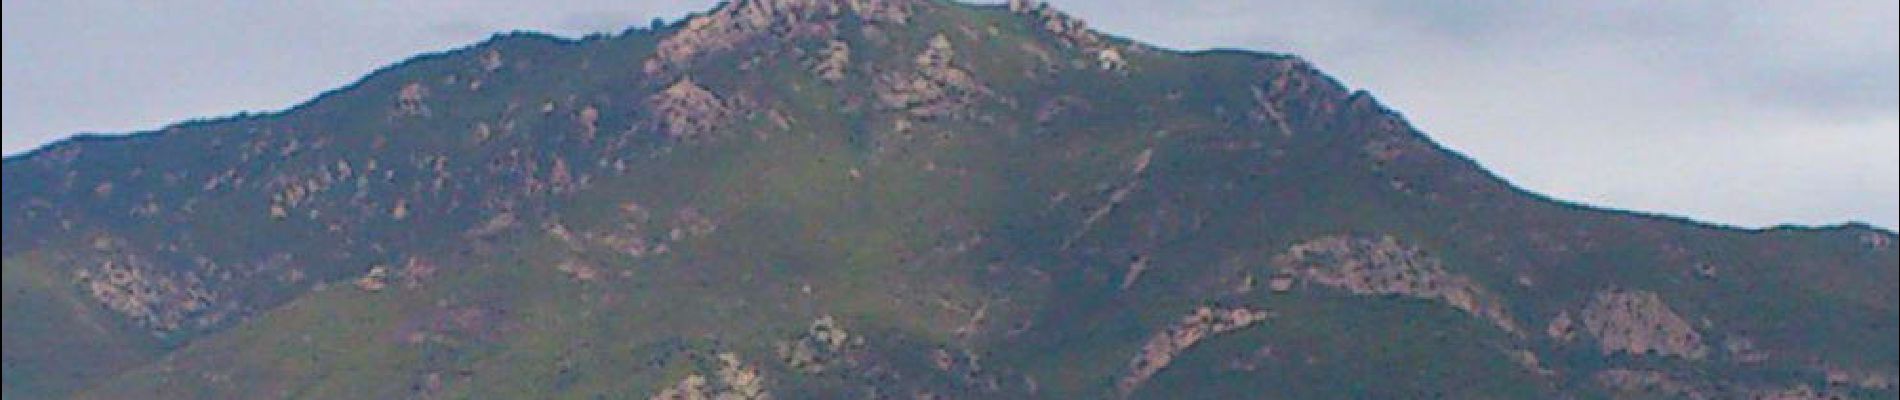 POI Ajaccio - 00 - Le Monte Aragnascu (888 m) - Photo